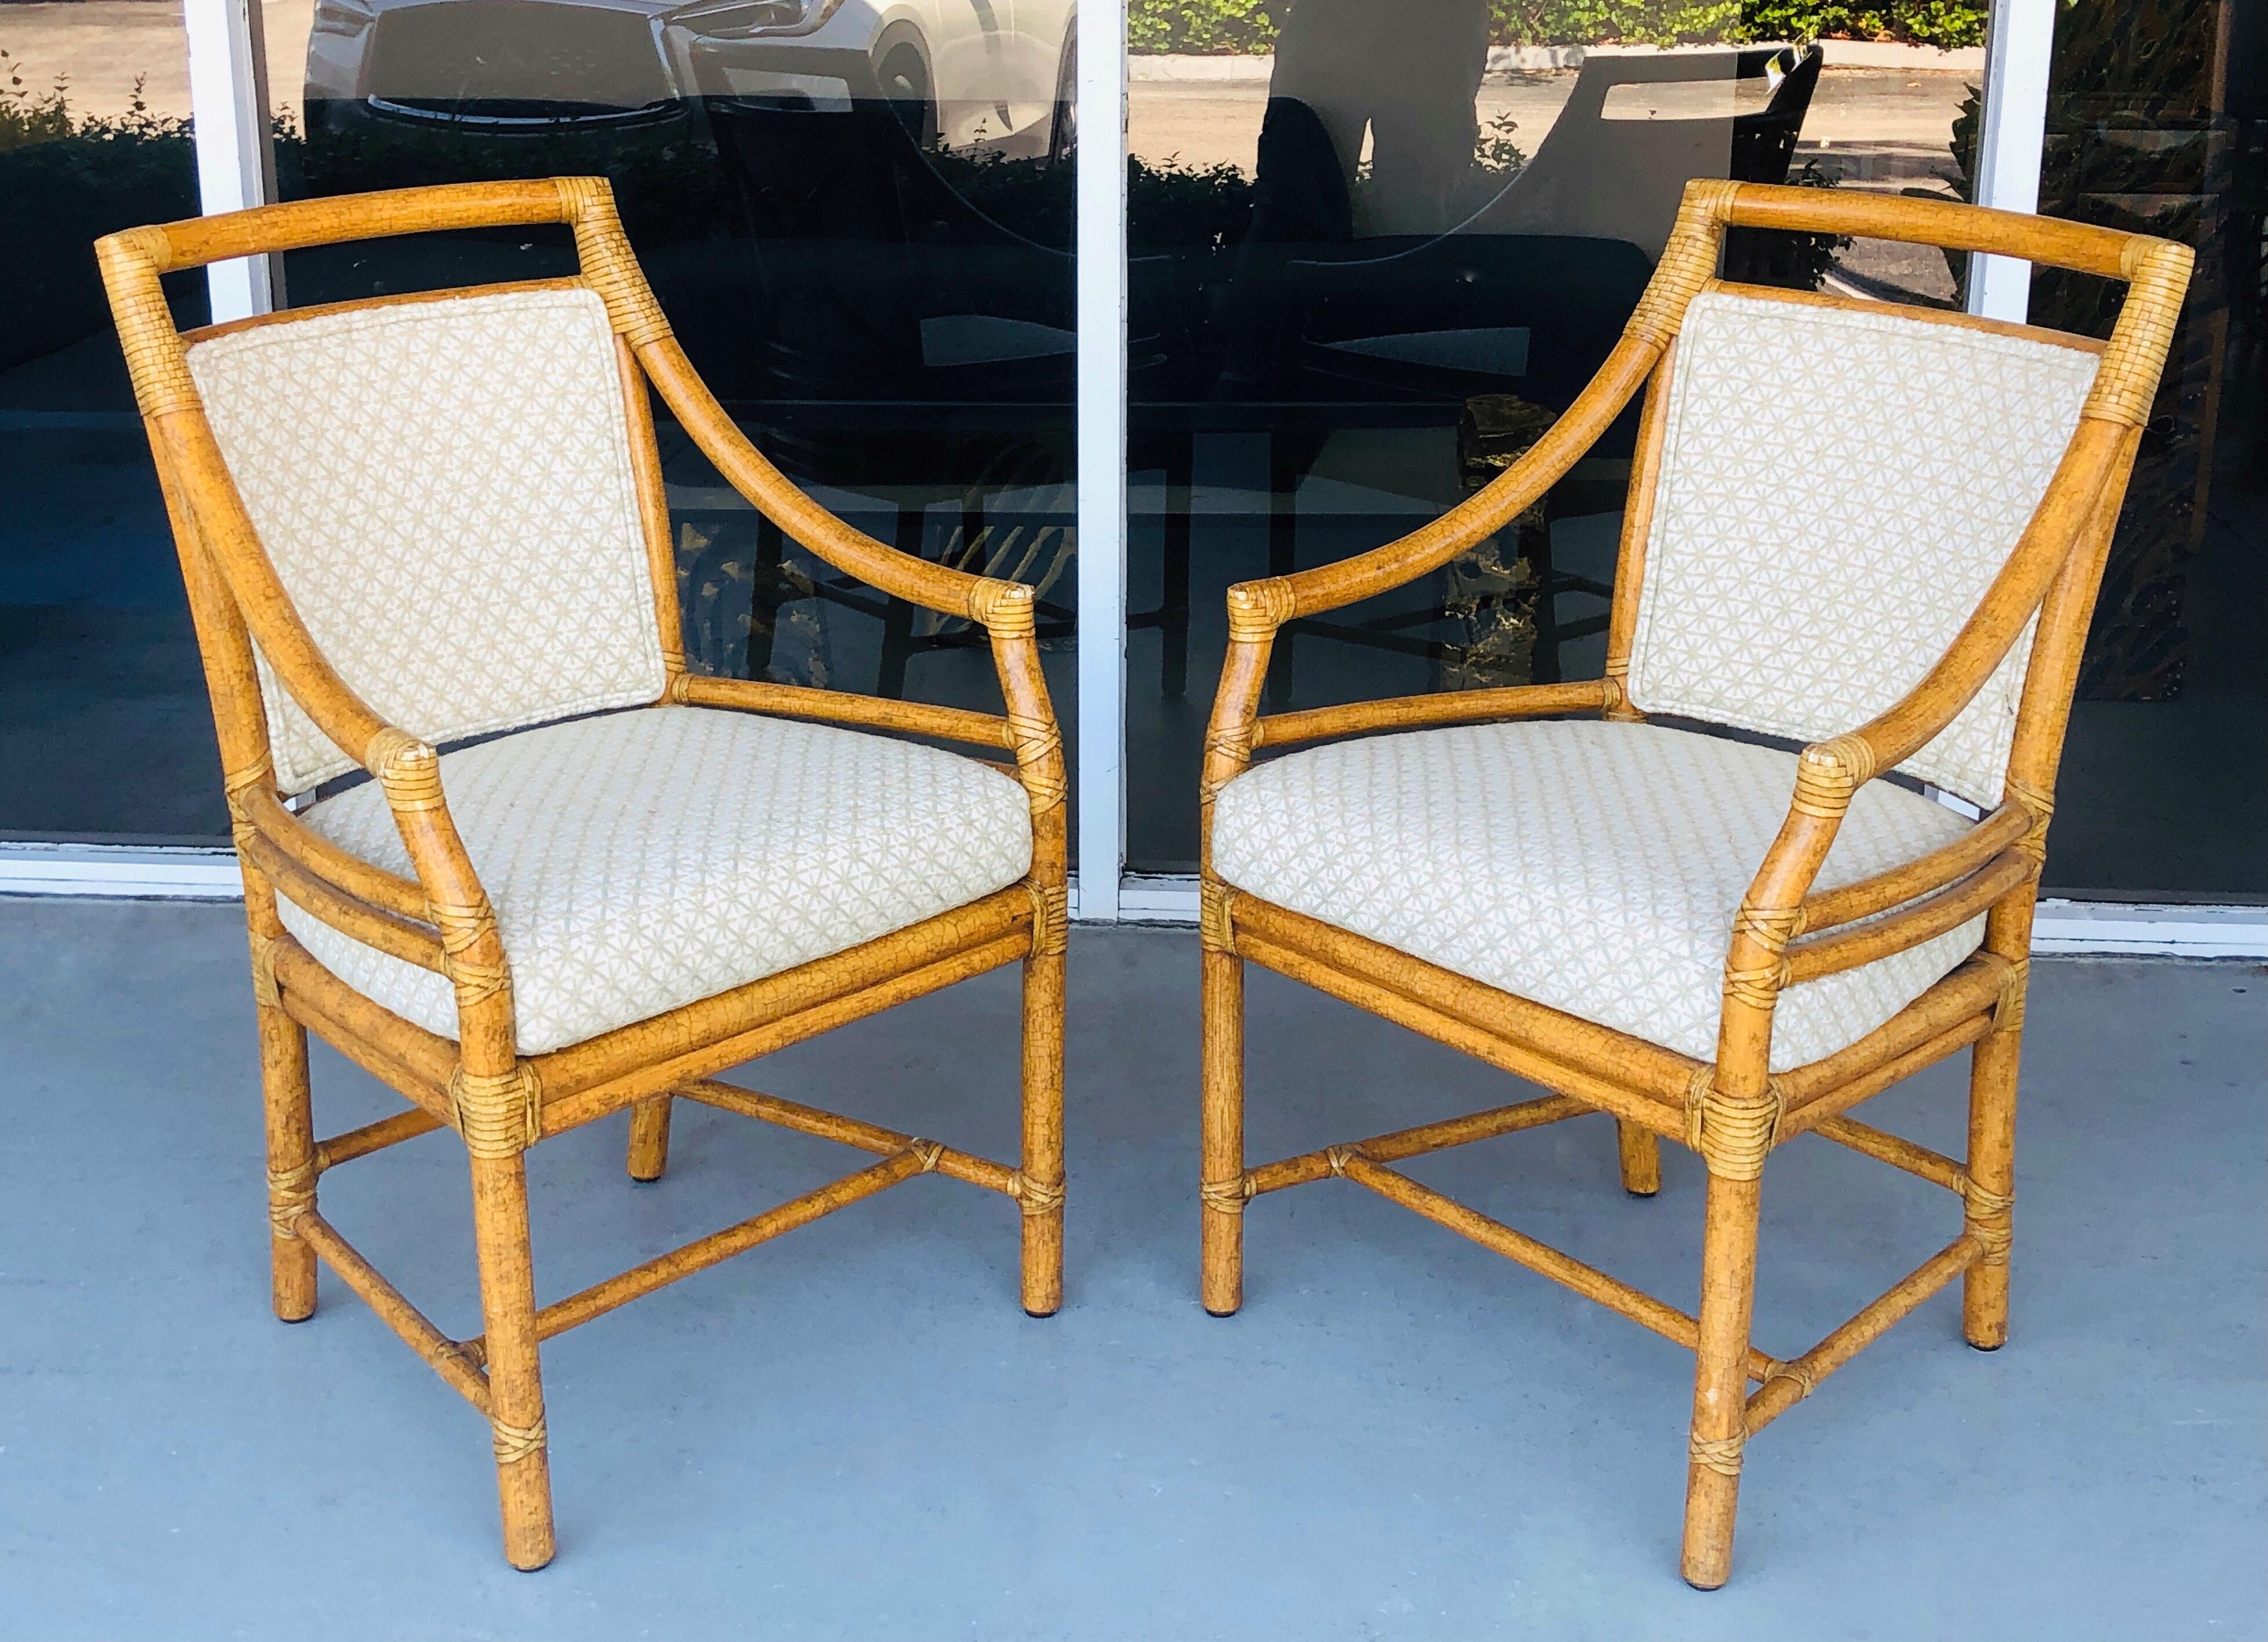 Une paire de fauteuils en rotin McGuire. 3 paires disponibles. Notez la magnifique finition personnalisée et la sellerie brodée.